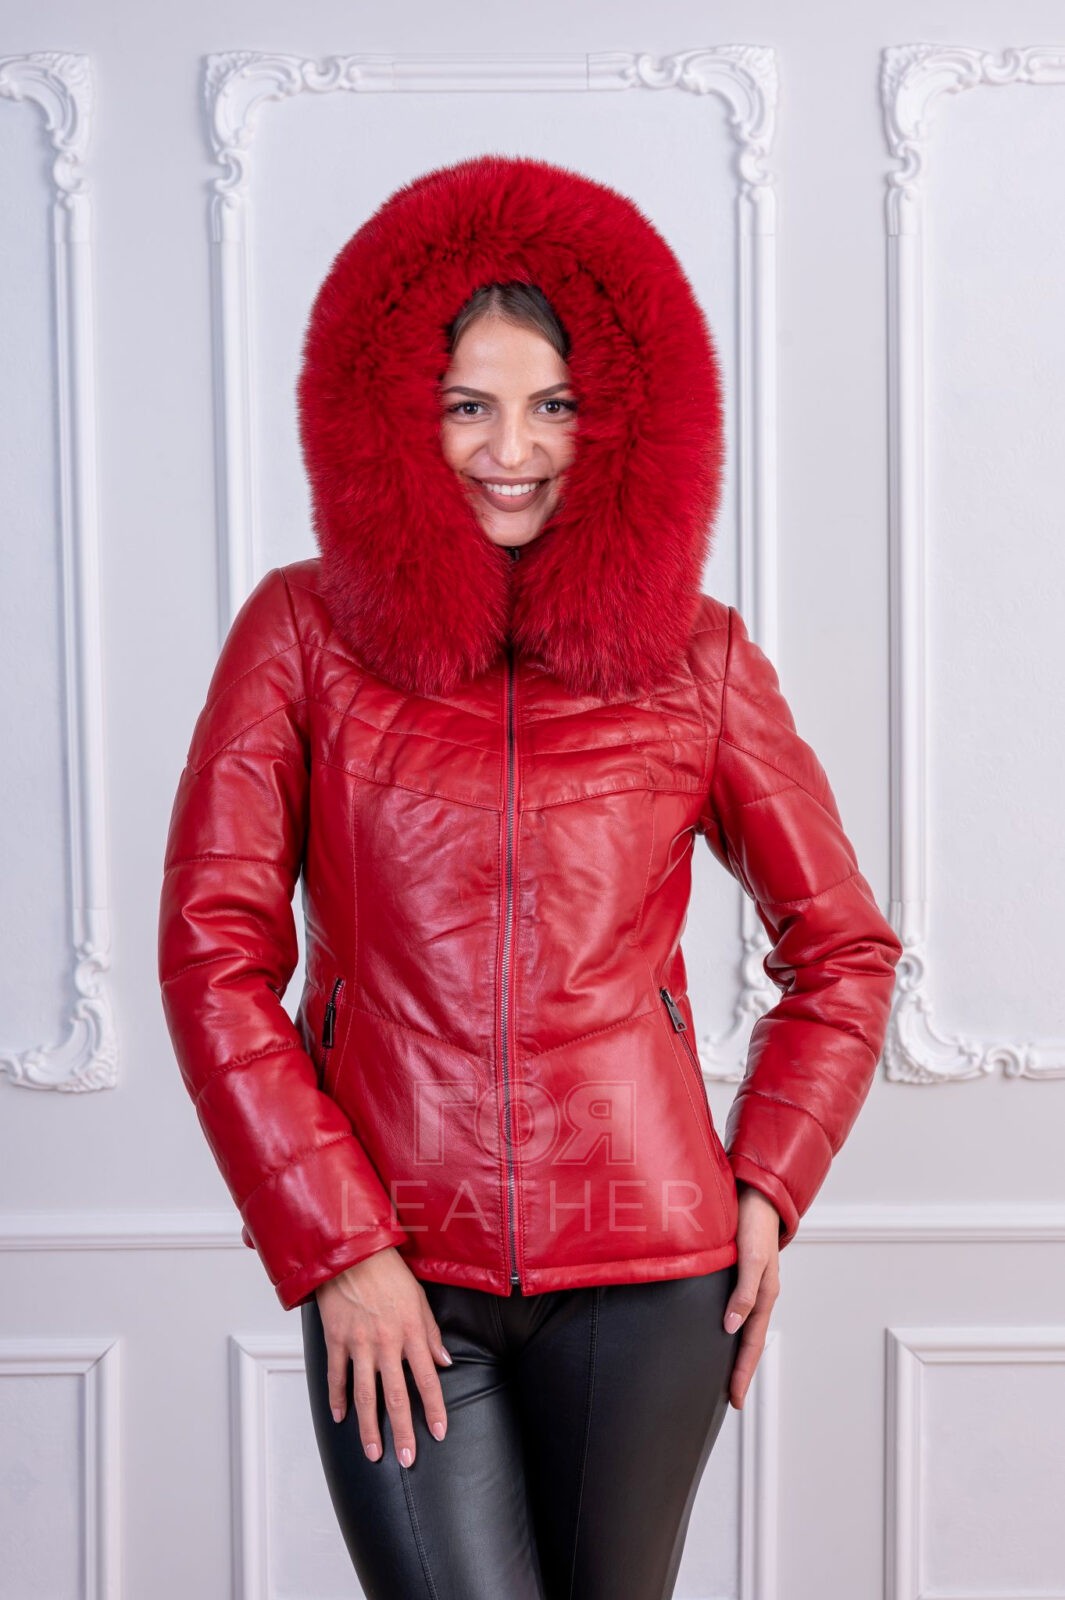 Зимно яке с качулка-червено от ГОЯ Leather. Модел изработен от 100% естетвена агнешка напа. Подвижна качулка с богата гарнитура от лисица. Лека, топла и комфортна дреха за студените зимни дни.